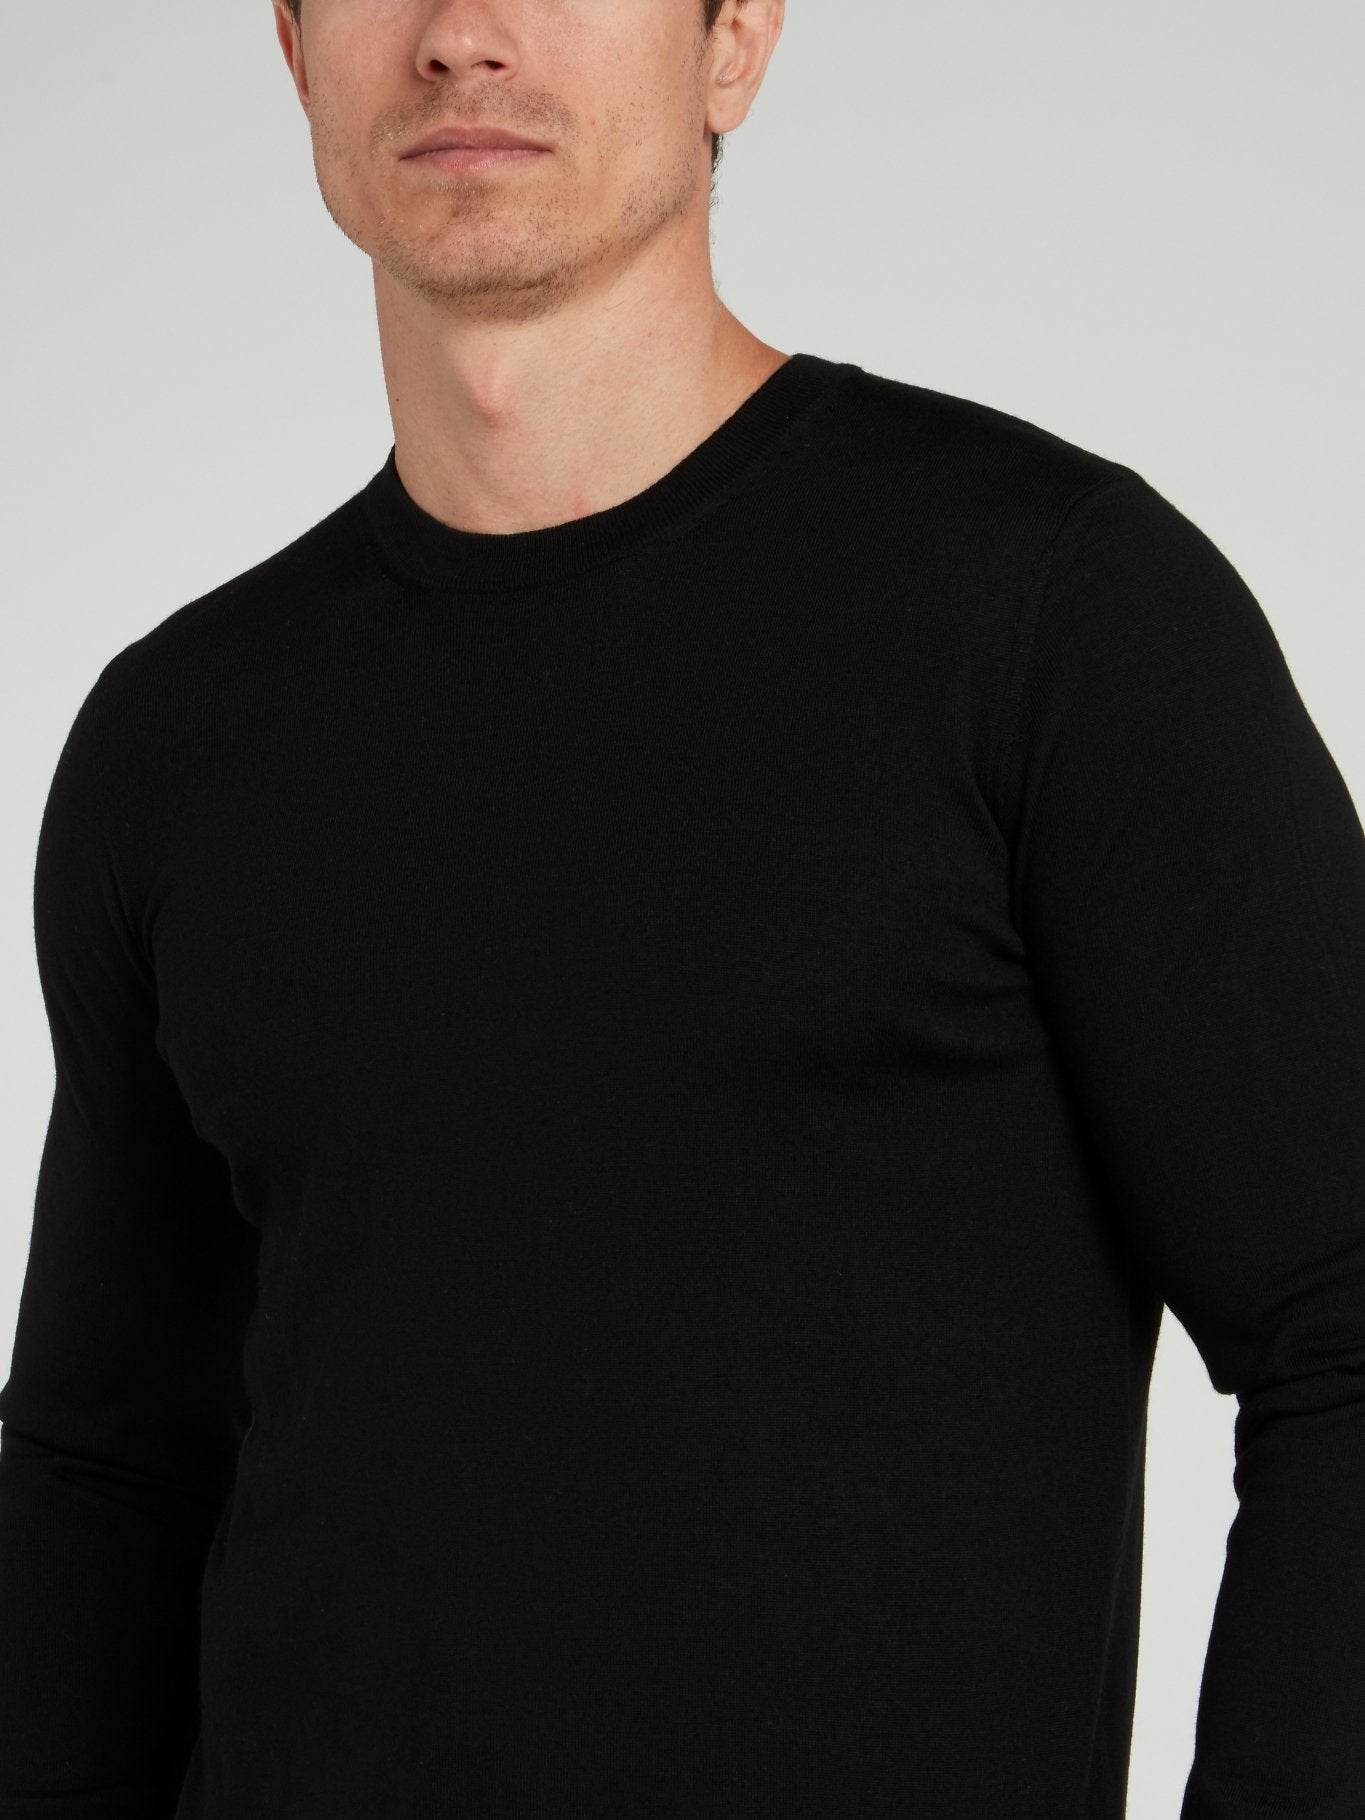 Черный свитер с полоской на спине